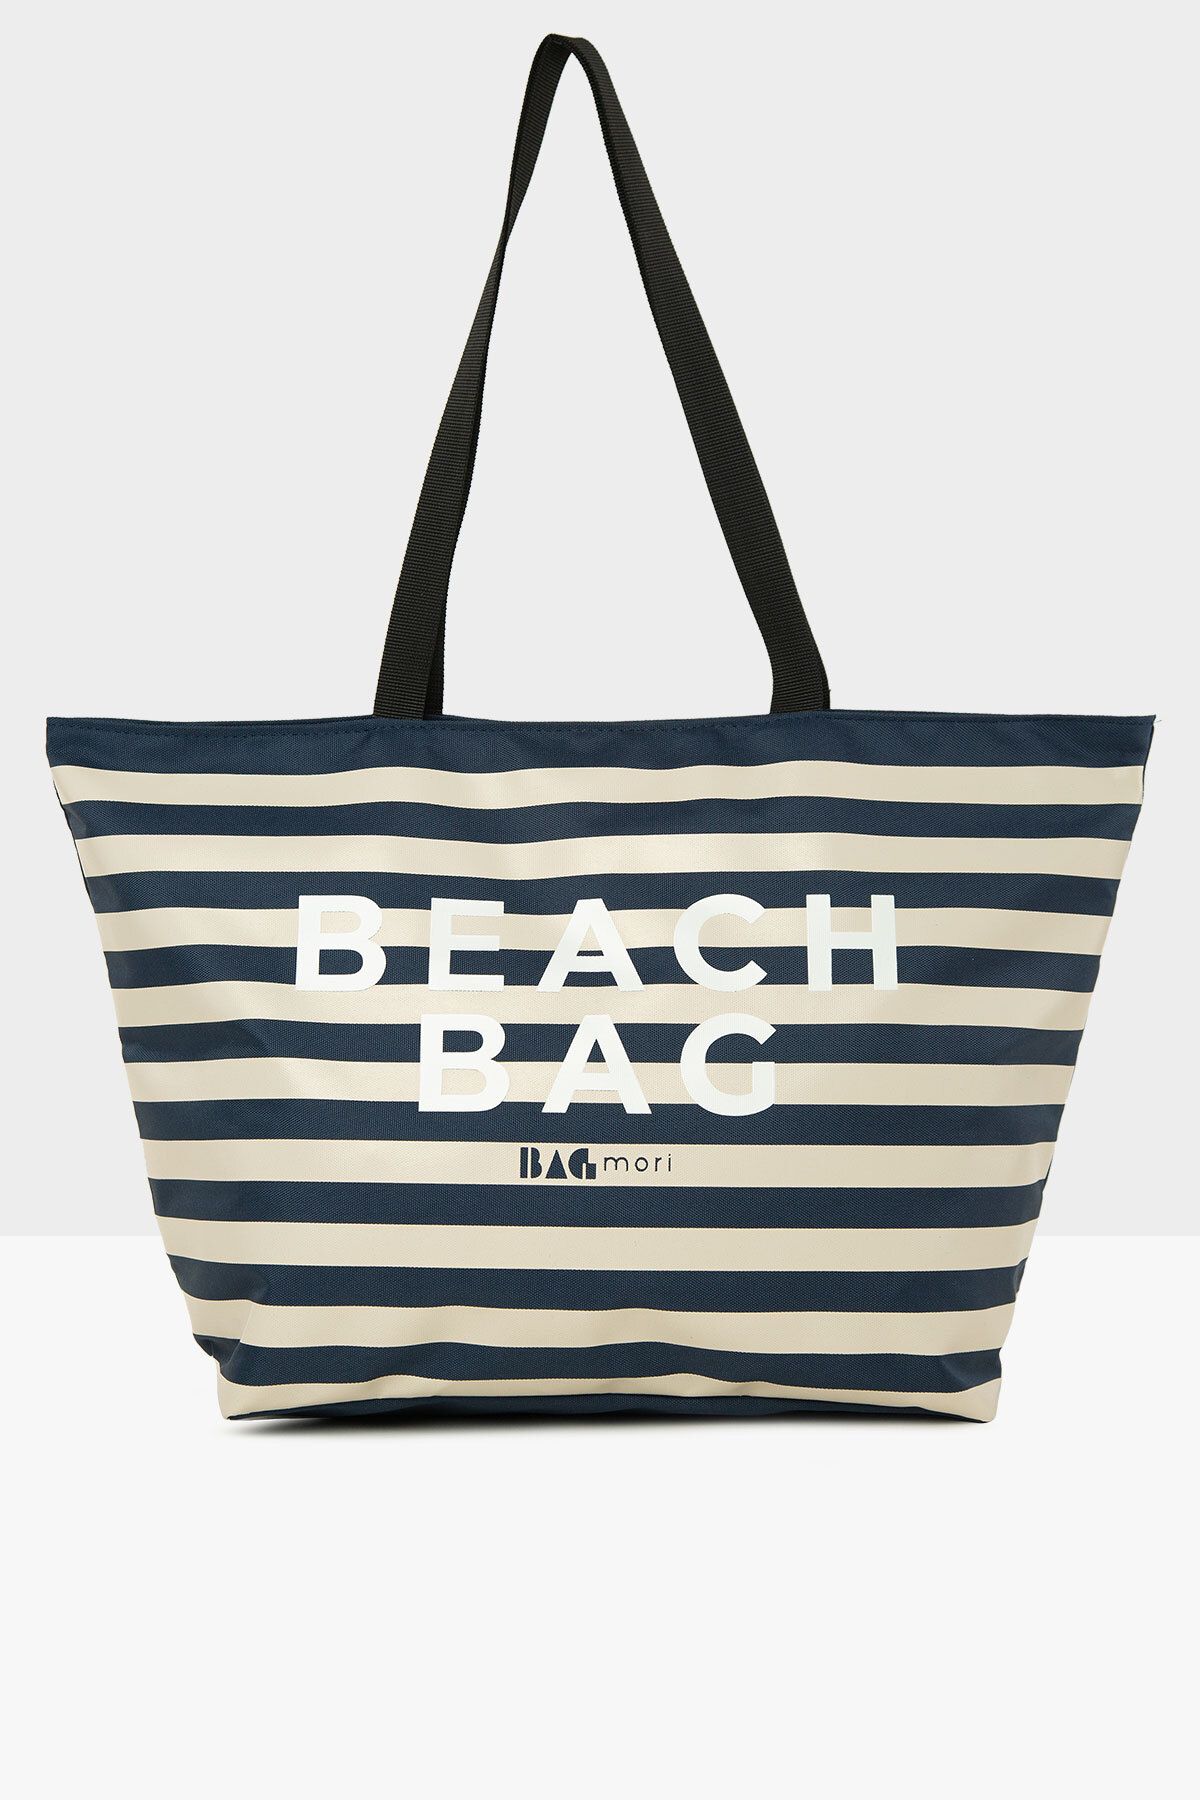 Bagmori Lacivert Kadın Çizgili Beach Bag Baskılı Plaj Çantası M000008438